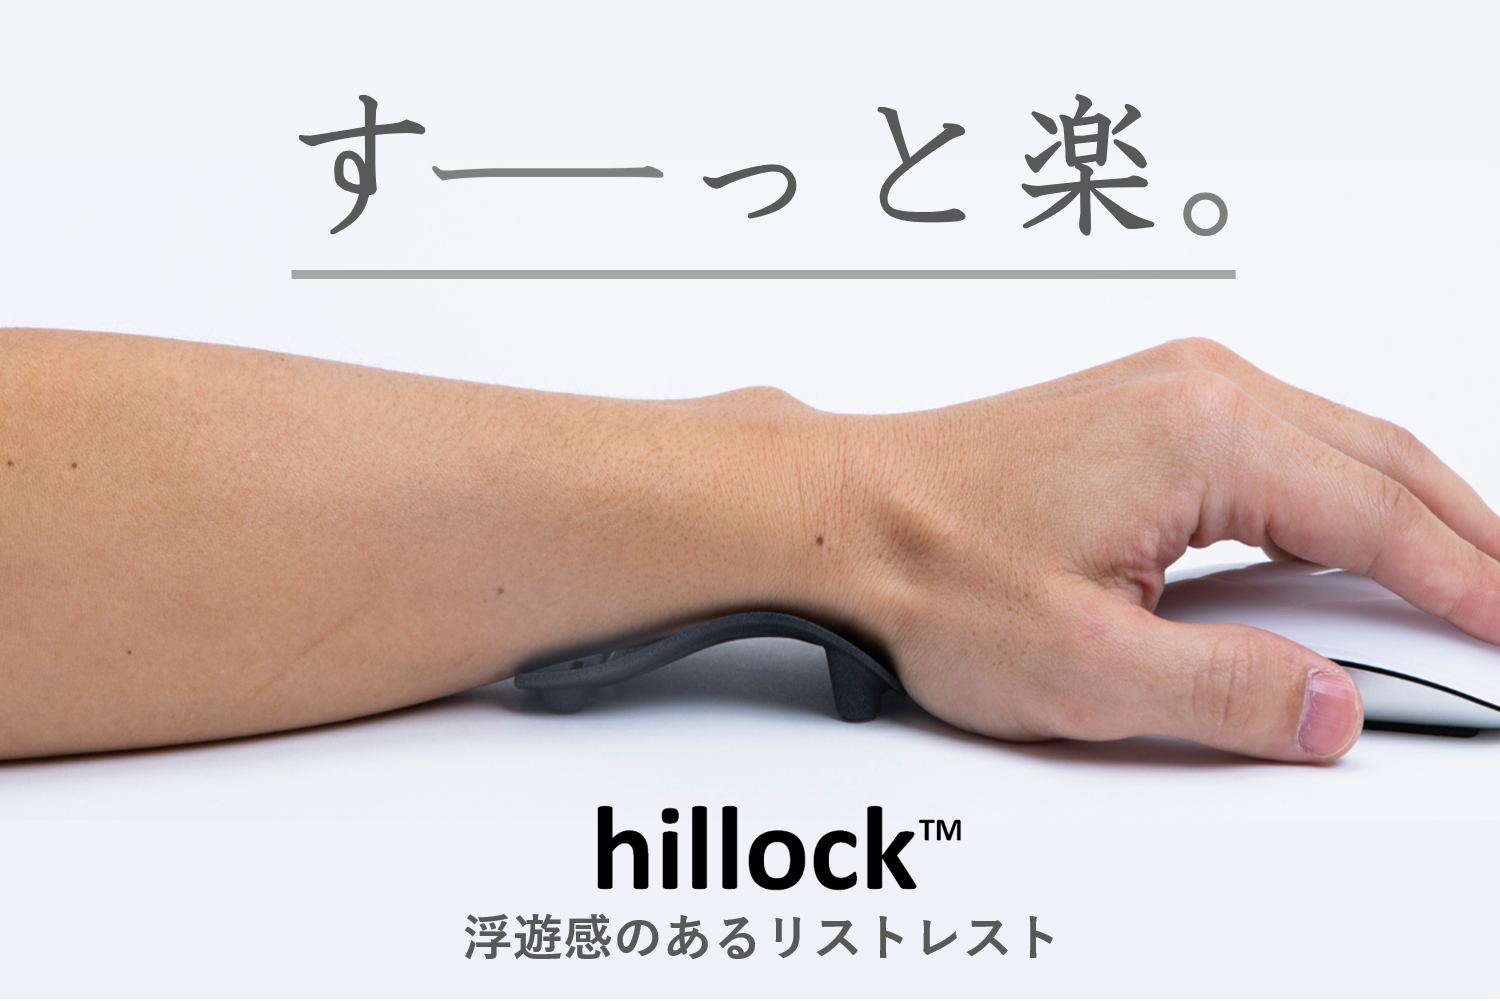 マウス使いの必需品 浮遊感のあるリストレスト Hillock Engadget 日本版